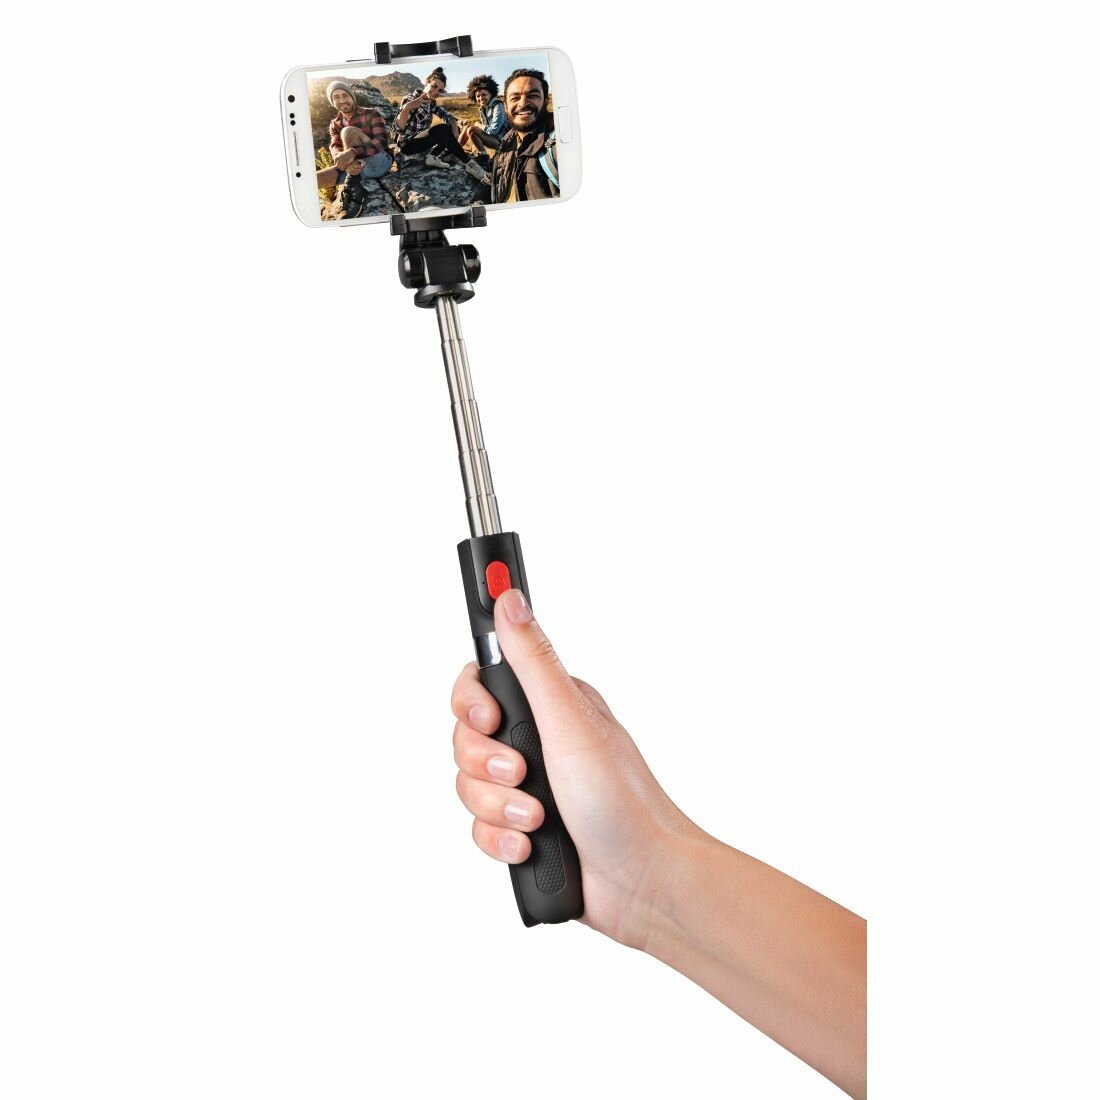 Kijek do selfie Hama Selfie Fun 70 z zamontowanym smartfonem, podczas użycia